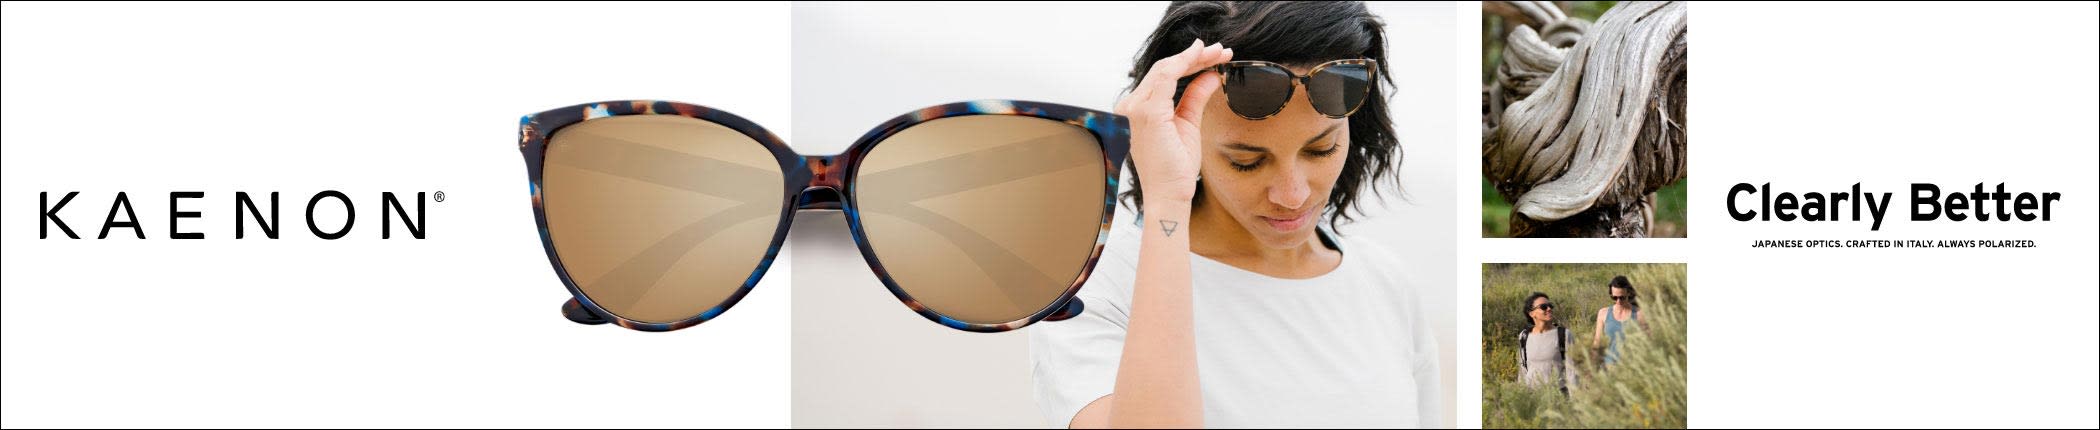 Shop Kaenon Sunglasses - featuring Colusa